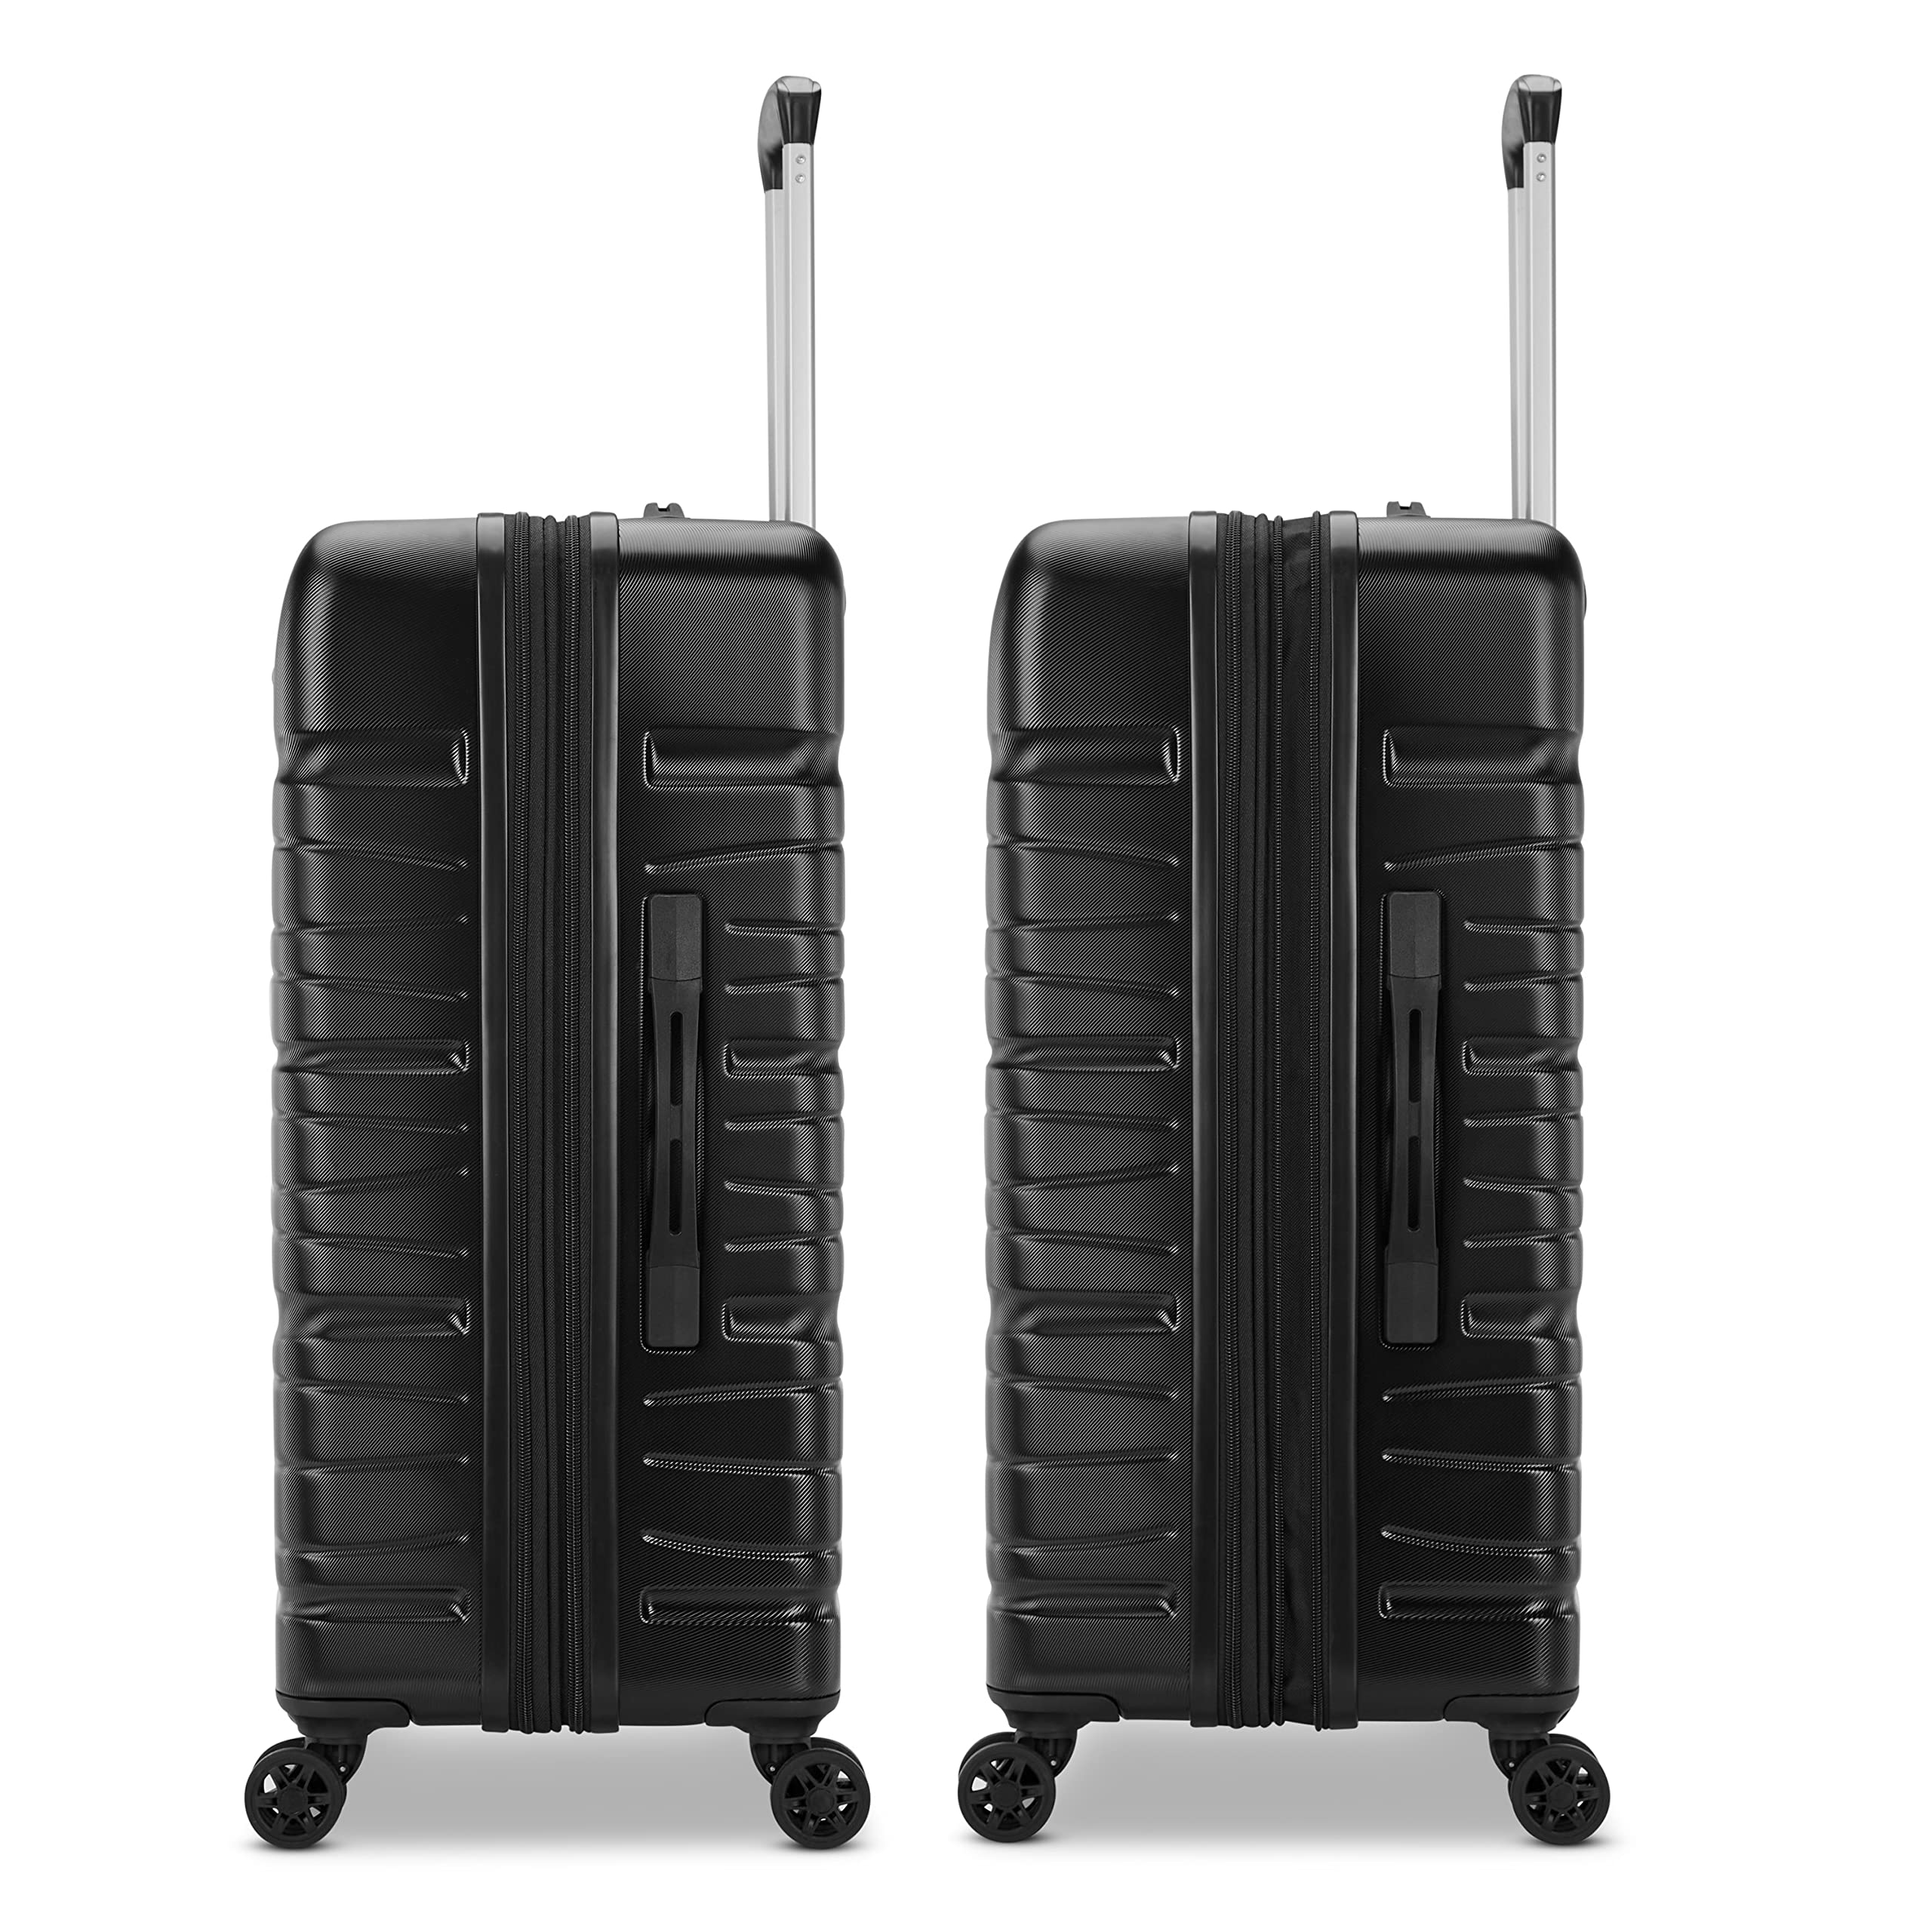 Mua Samsonite Evolve SE Hardside Expandable Luggage with Double Wheels